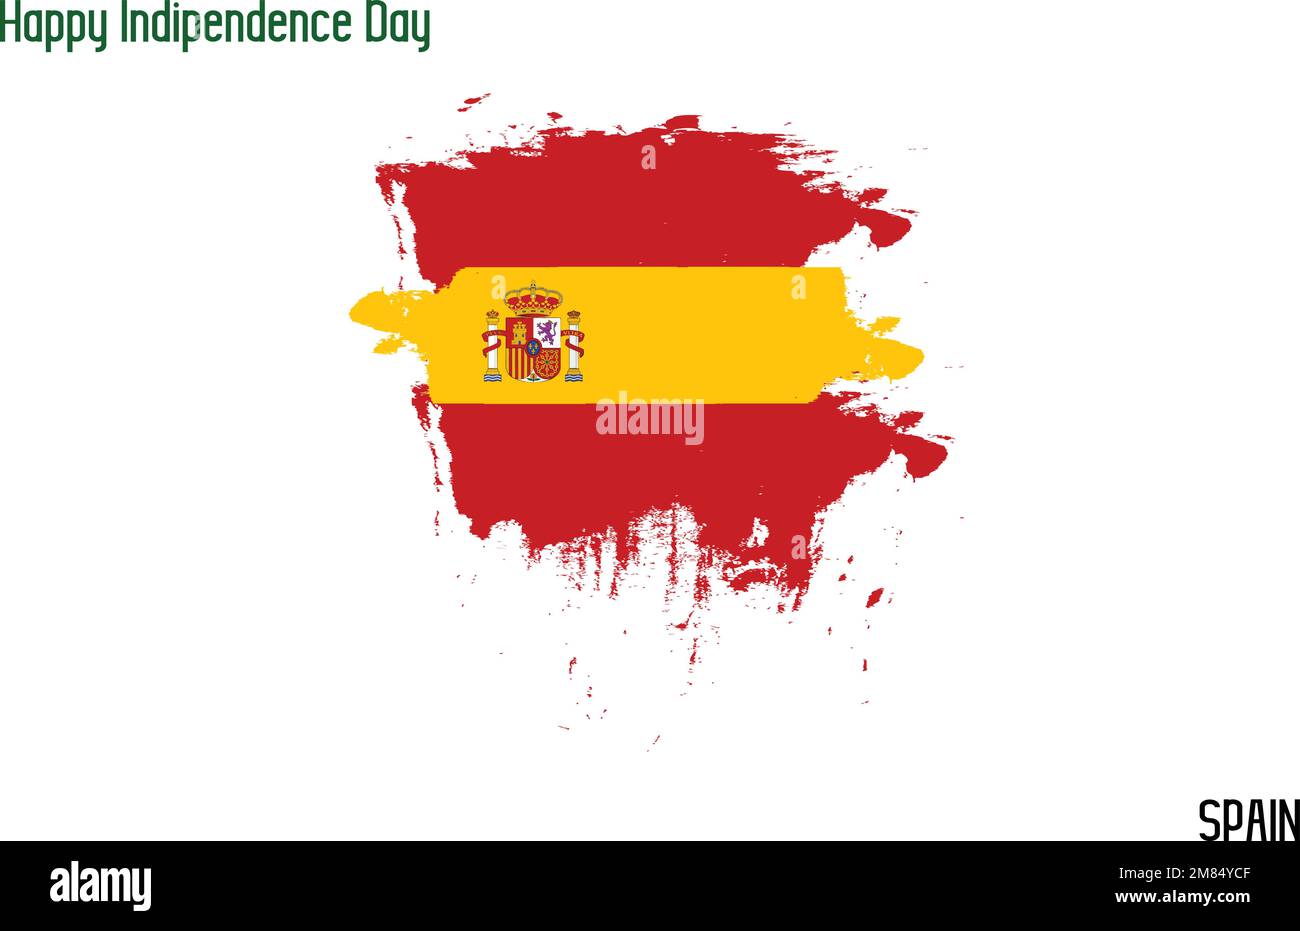 Spain National Flag Grunge Brush Stroke Vecctor Design Flag of Spain Stock Vector